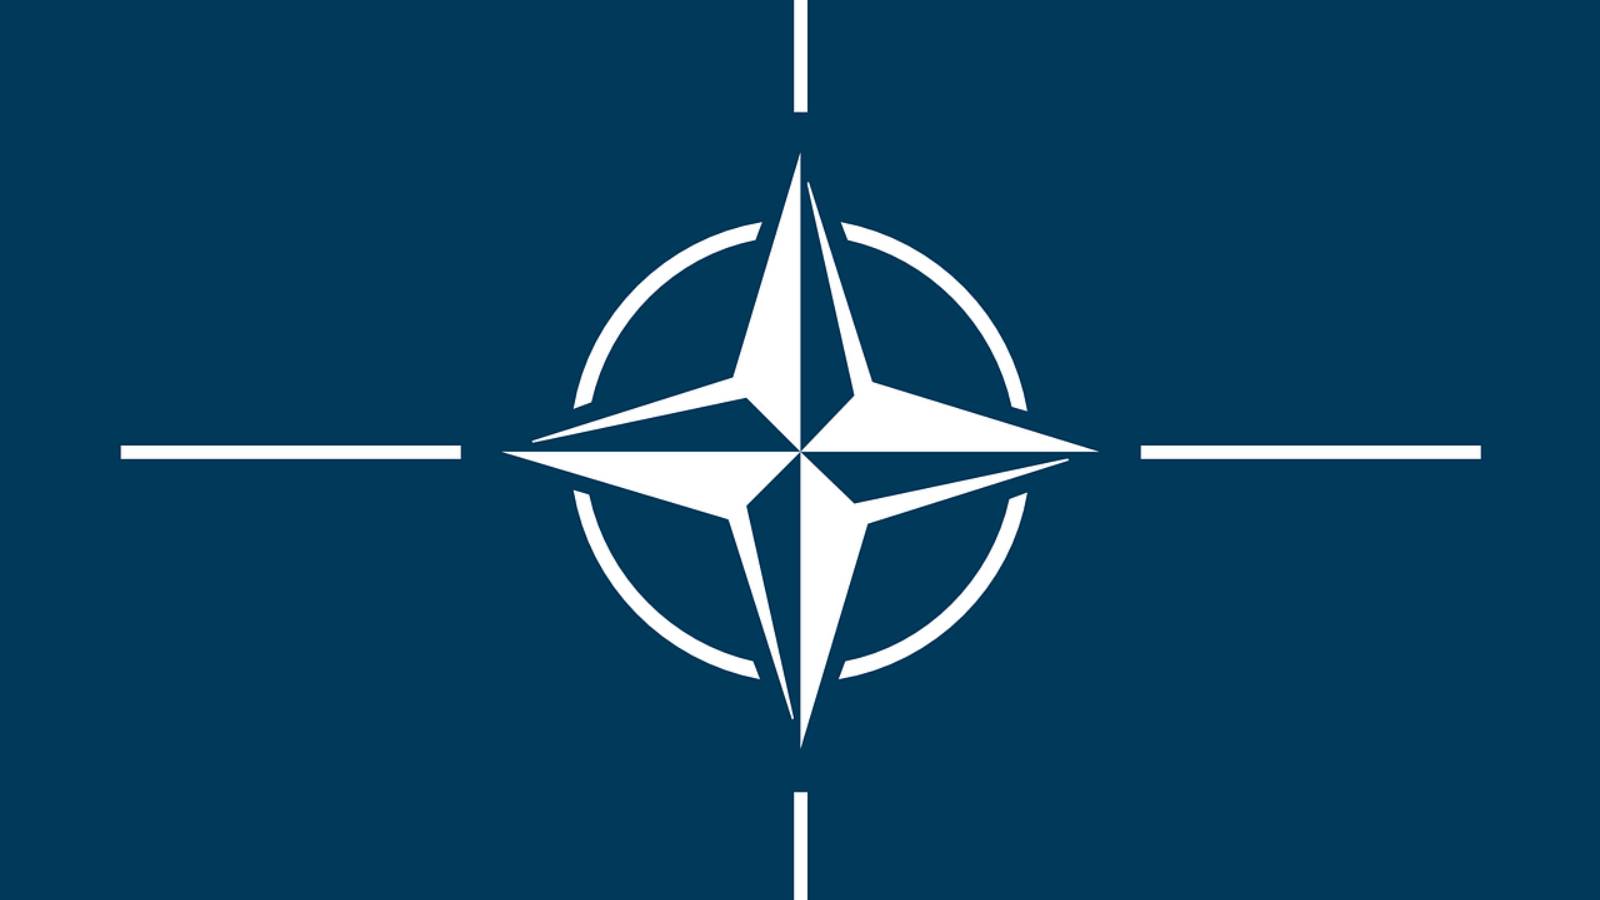 NATO utför omfattande övningar i Europa trots Ukrainakriget